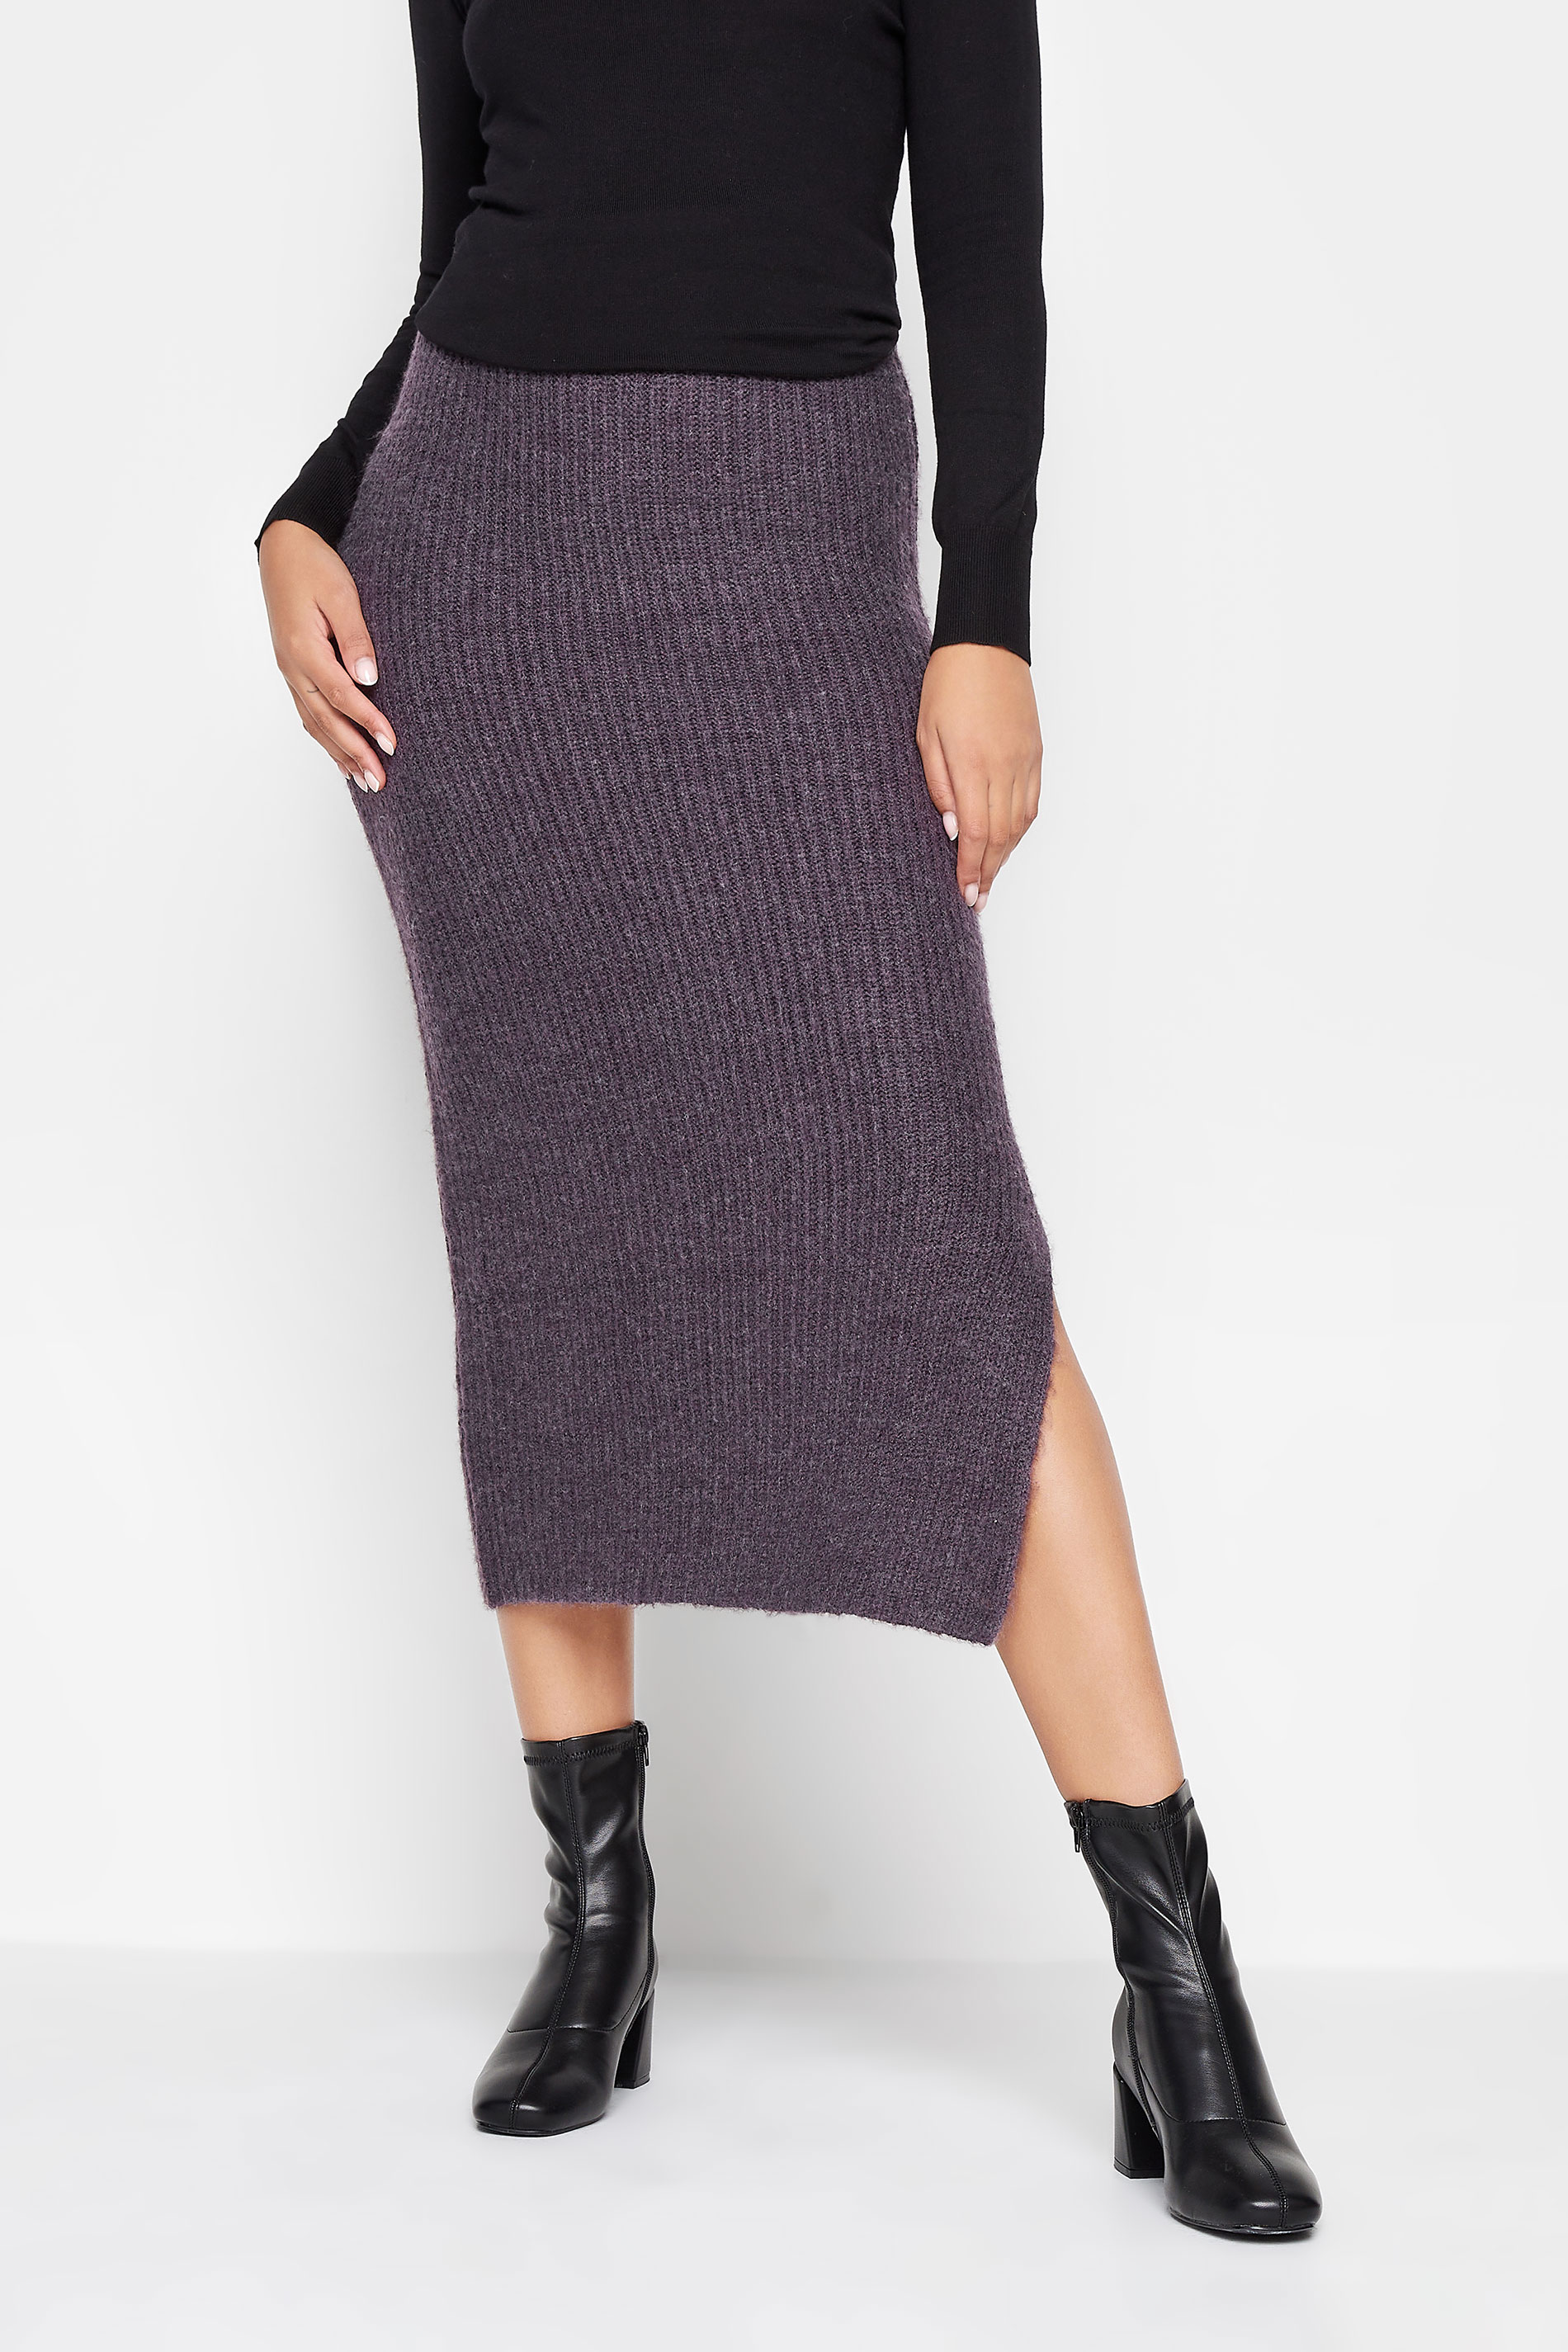 LTS Tall Dark Purple Midi Knitted Skirt | Long Tall Sally 1